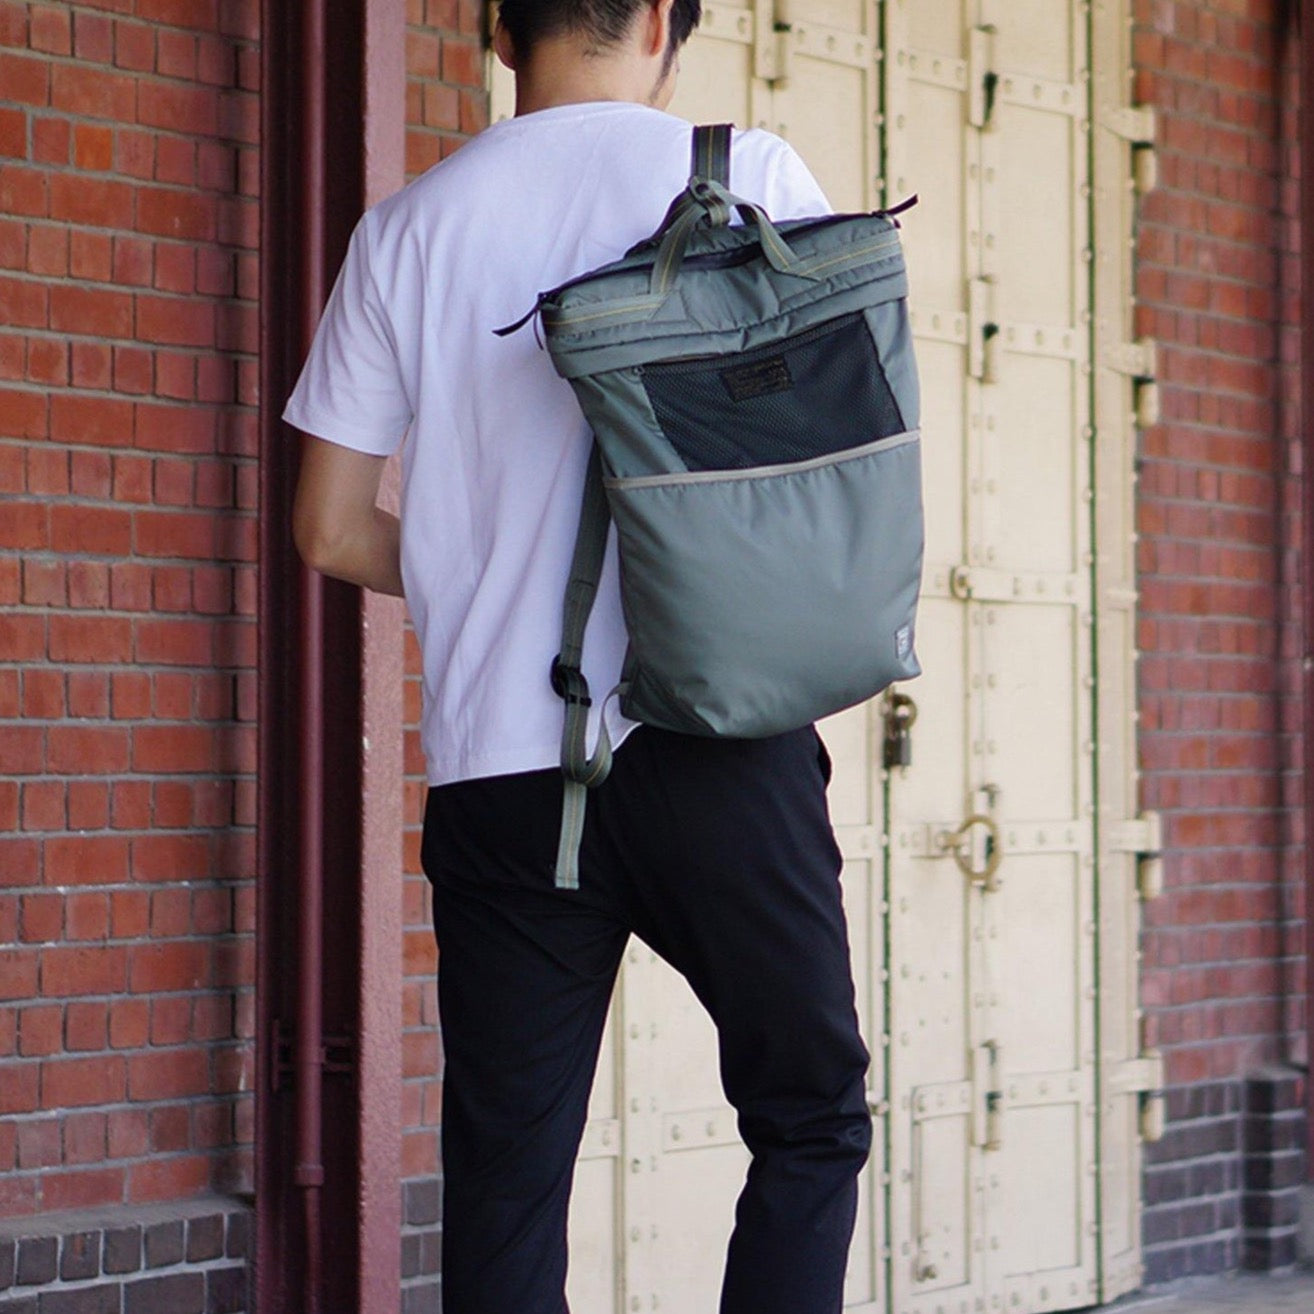 Harvest Label - Bag, Litespan HS-0354 Backpack tote type Sage Green